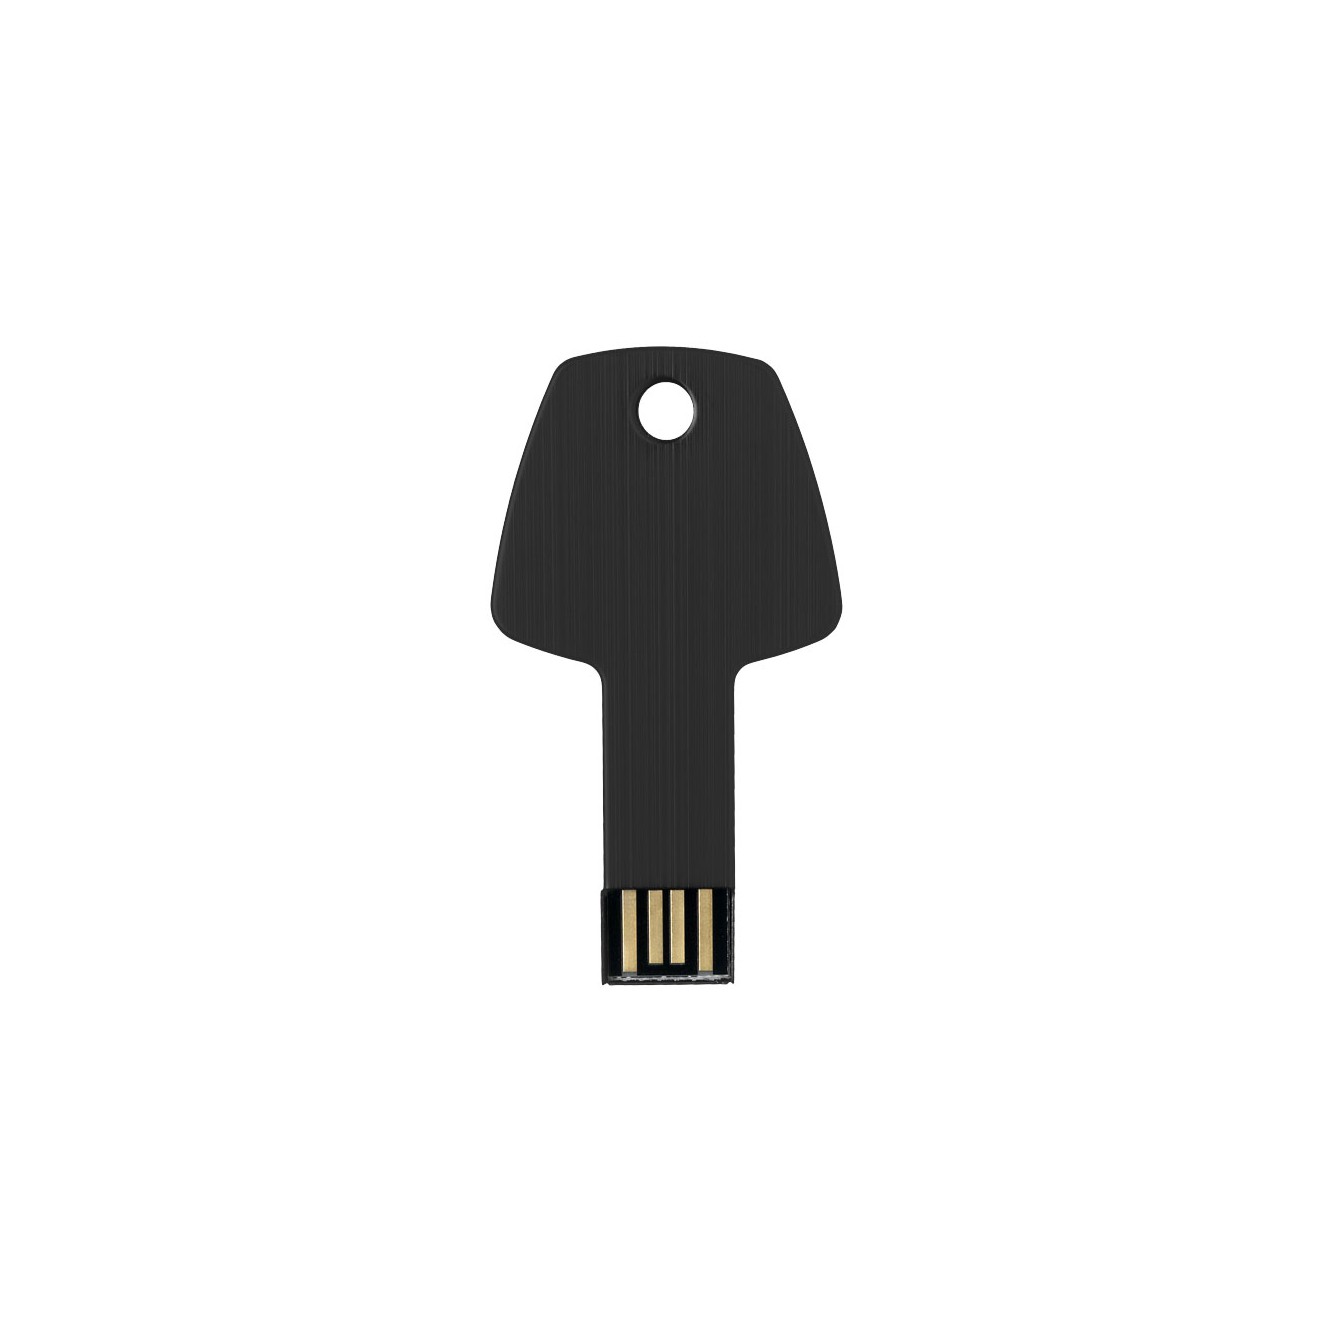 USB stick key